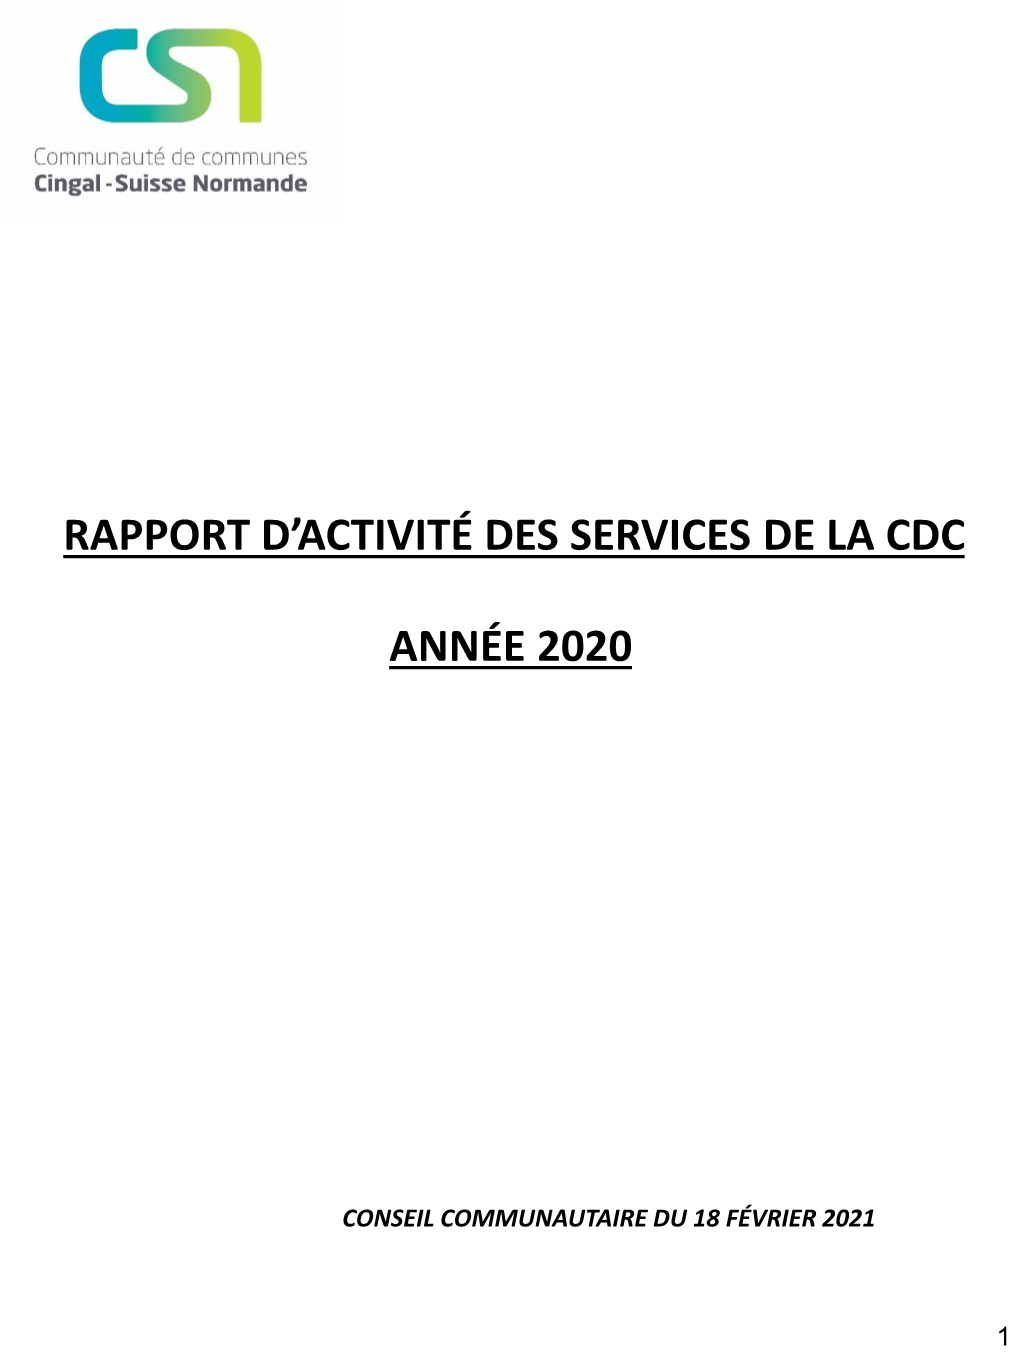 Rapport D'activité Des Services 2020